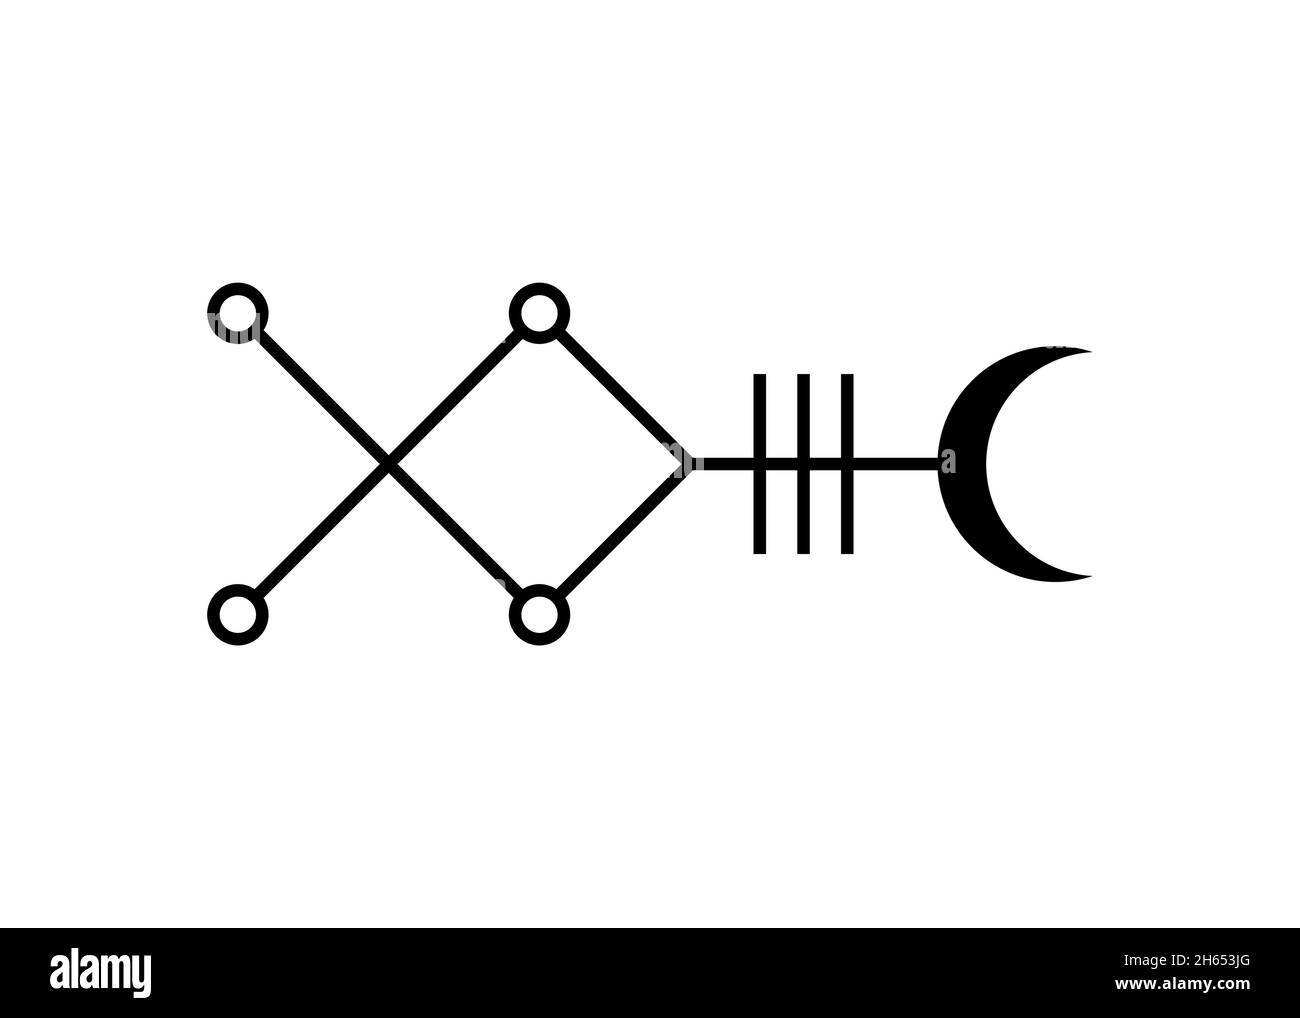 Simbolo mistico di stella Sirius astrologia segno alfabetico, Canis simboli kabbalistici geroglifici maggiori, immagine vettoriale icona tatuaggio nero isolata Illustrazione Vettoriale